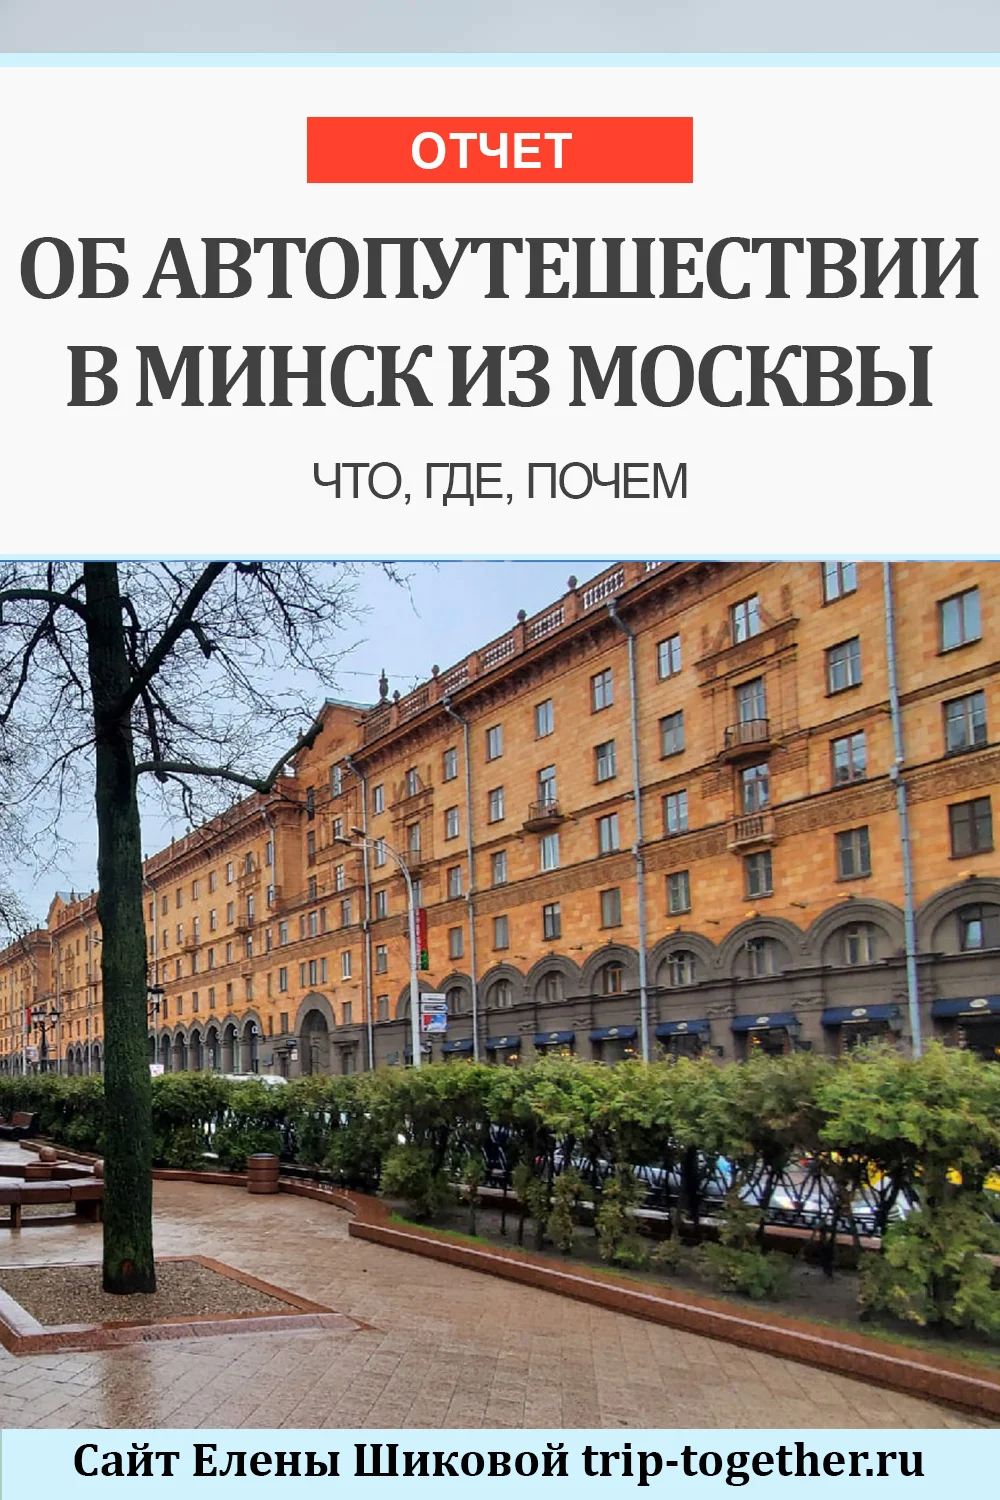 Отчет об автопутешествии в Минск из Москвы